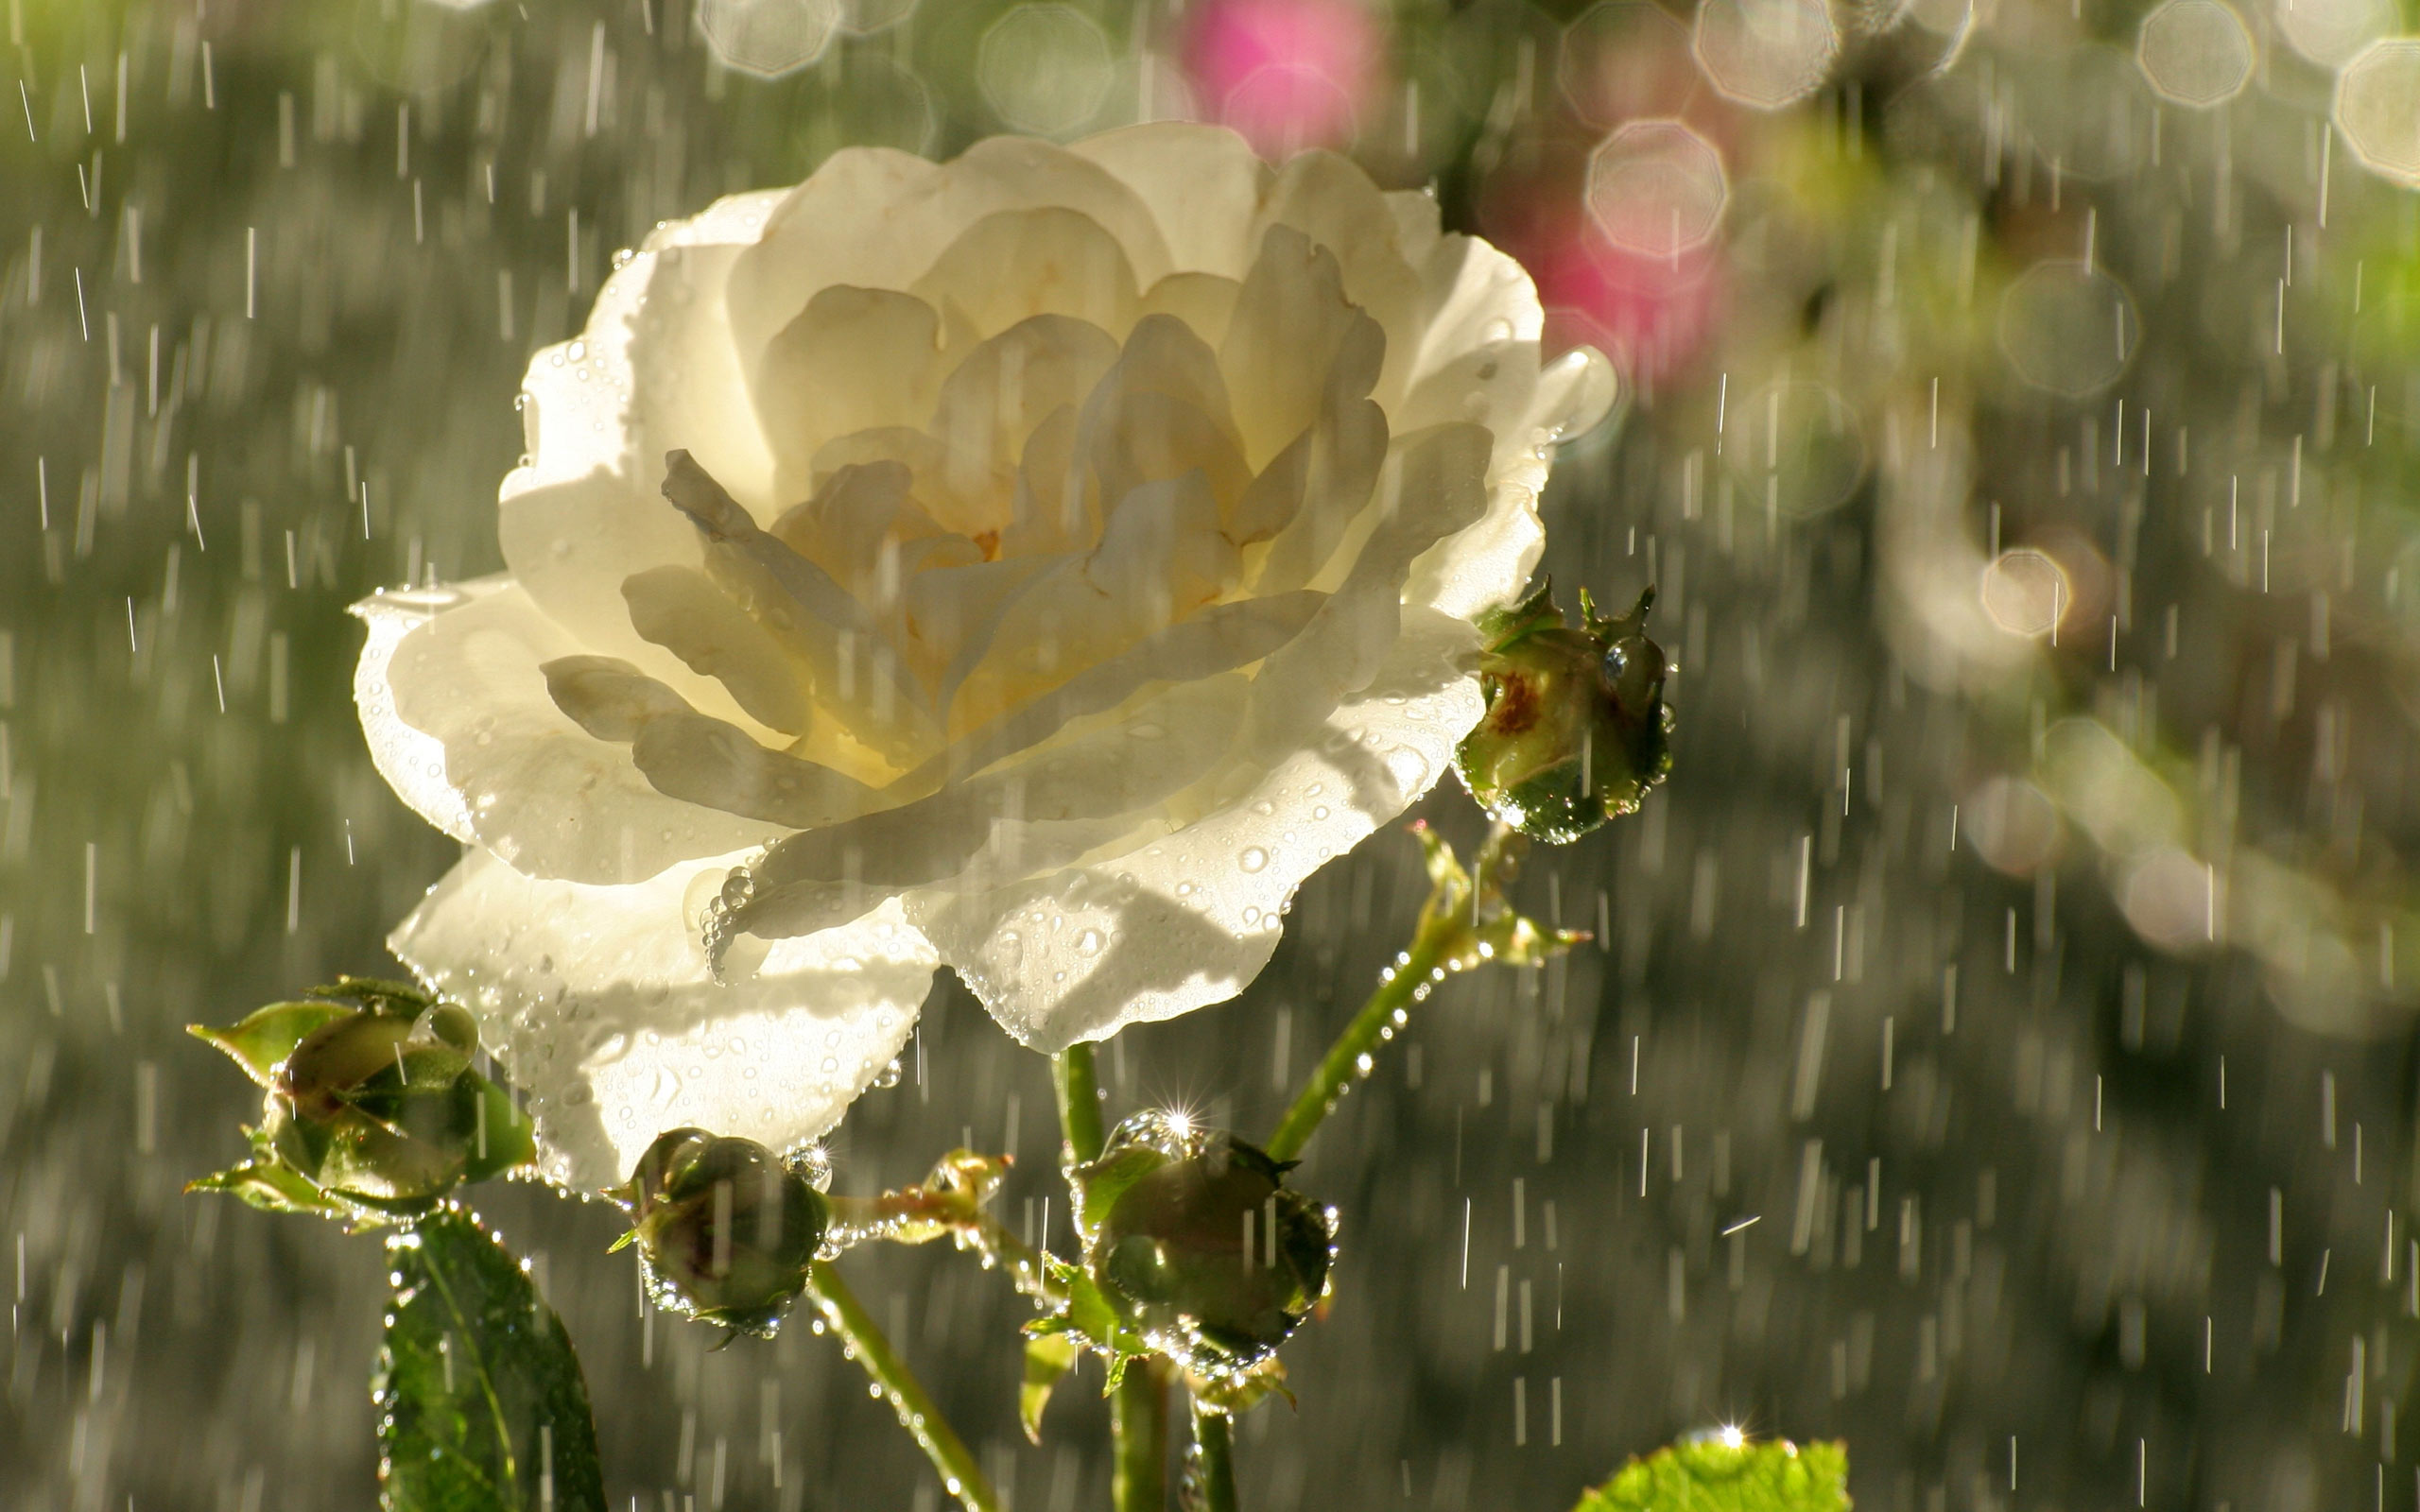 3d обои Белая распустившаяся роза летним днем под солнечным дождем. Капли дождя сверкают в лучах света, цветок выглядит свежим и чистым.  дождь # 34421